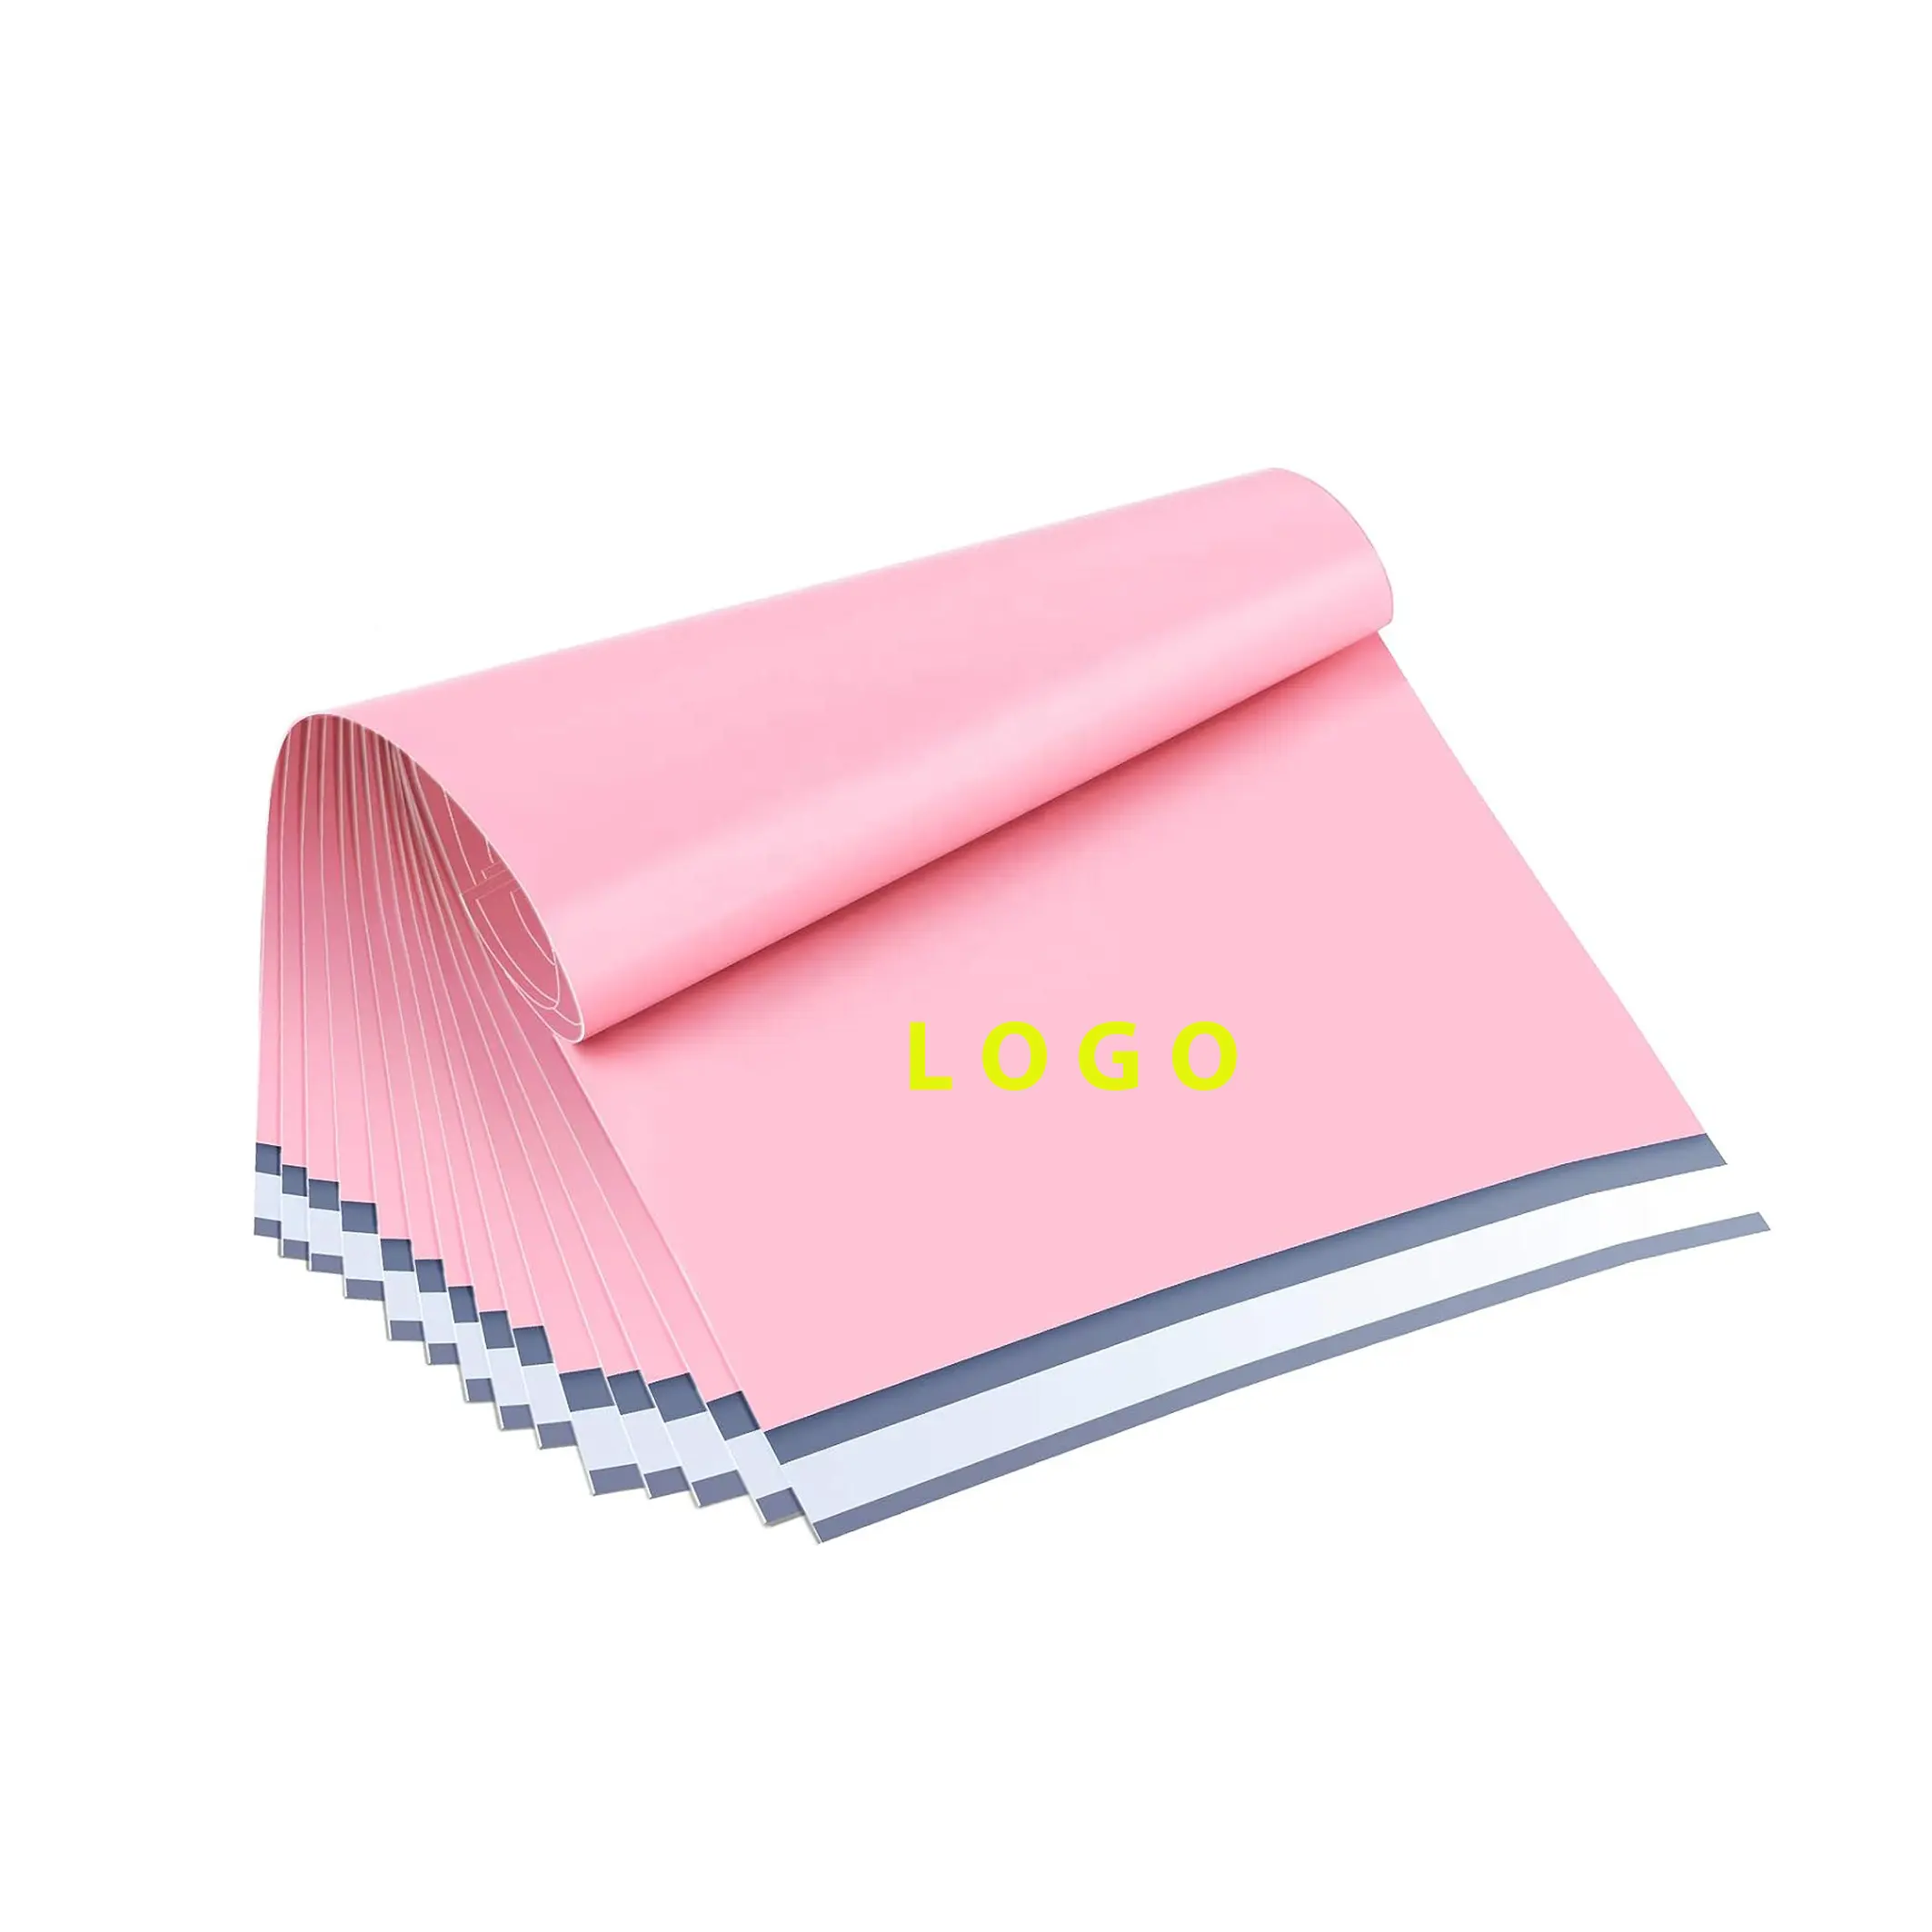 Günstige benutzer definierte Logo umwelt freundliche Kleidung Schuh rosa Poly Mailer Versand umschläge Versandt asche für kleine Unternehmen